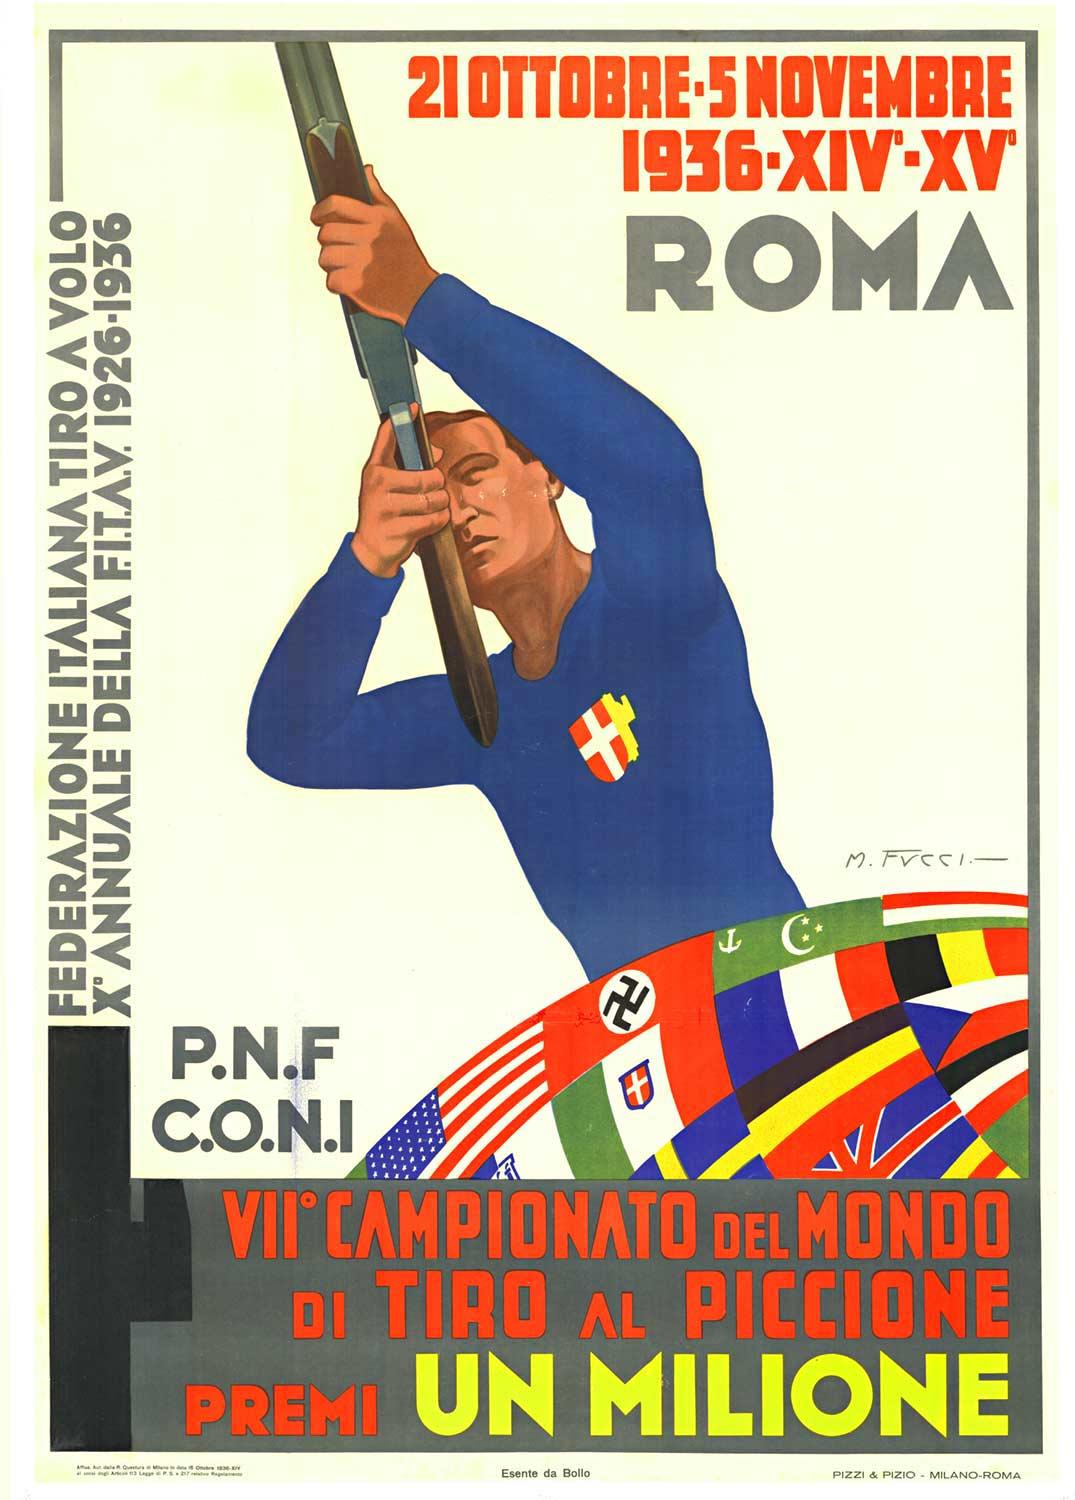 M. Fucci Portrait Print - Original "Campionato del Mondo, Tiro al Piccione" vintage sports poster